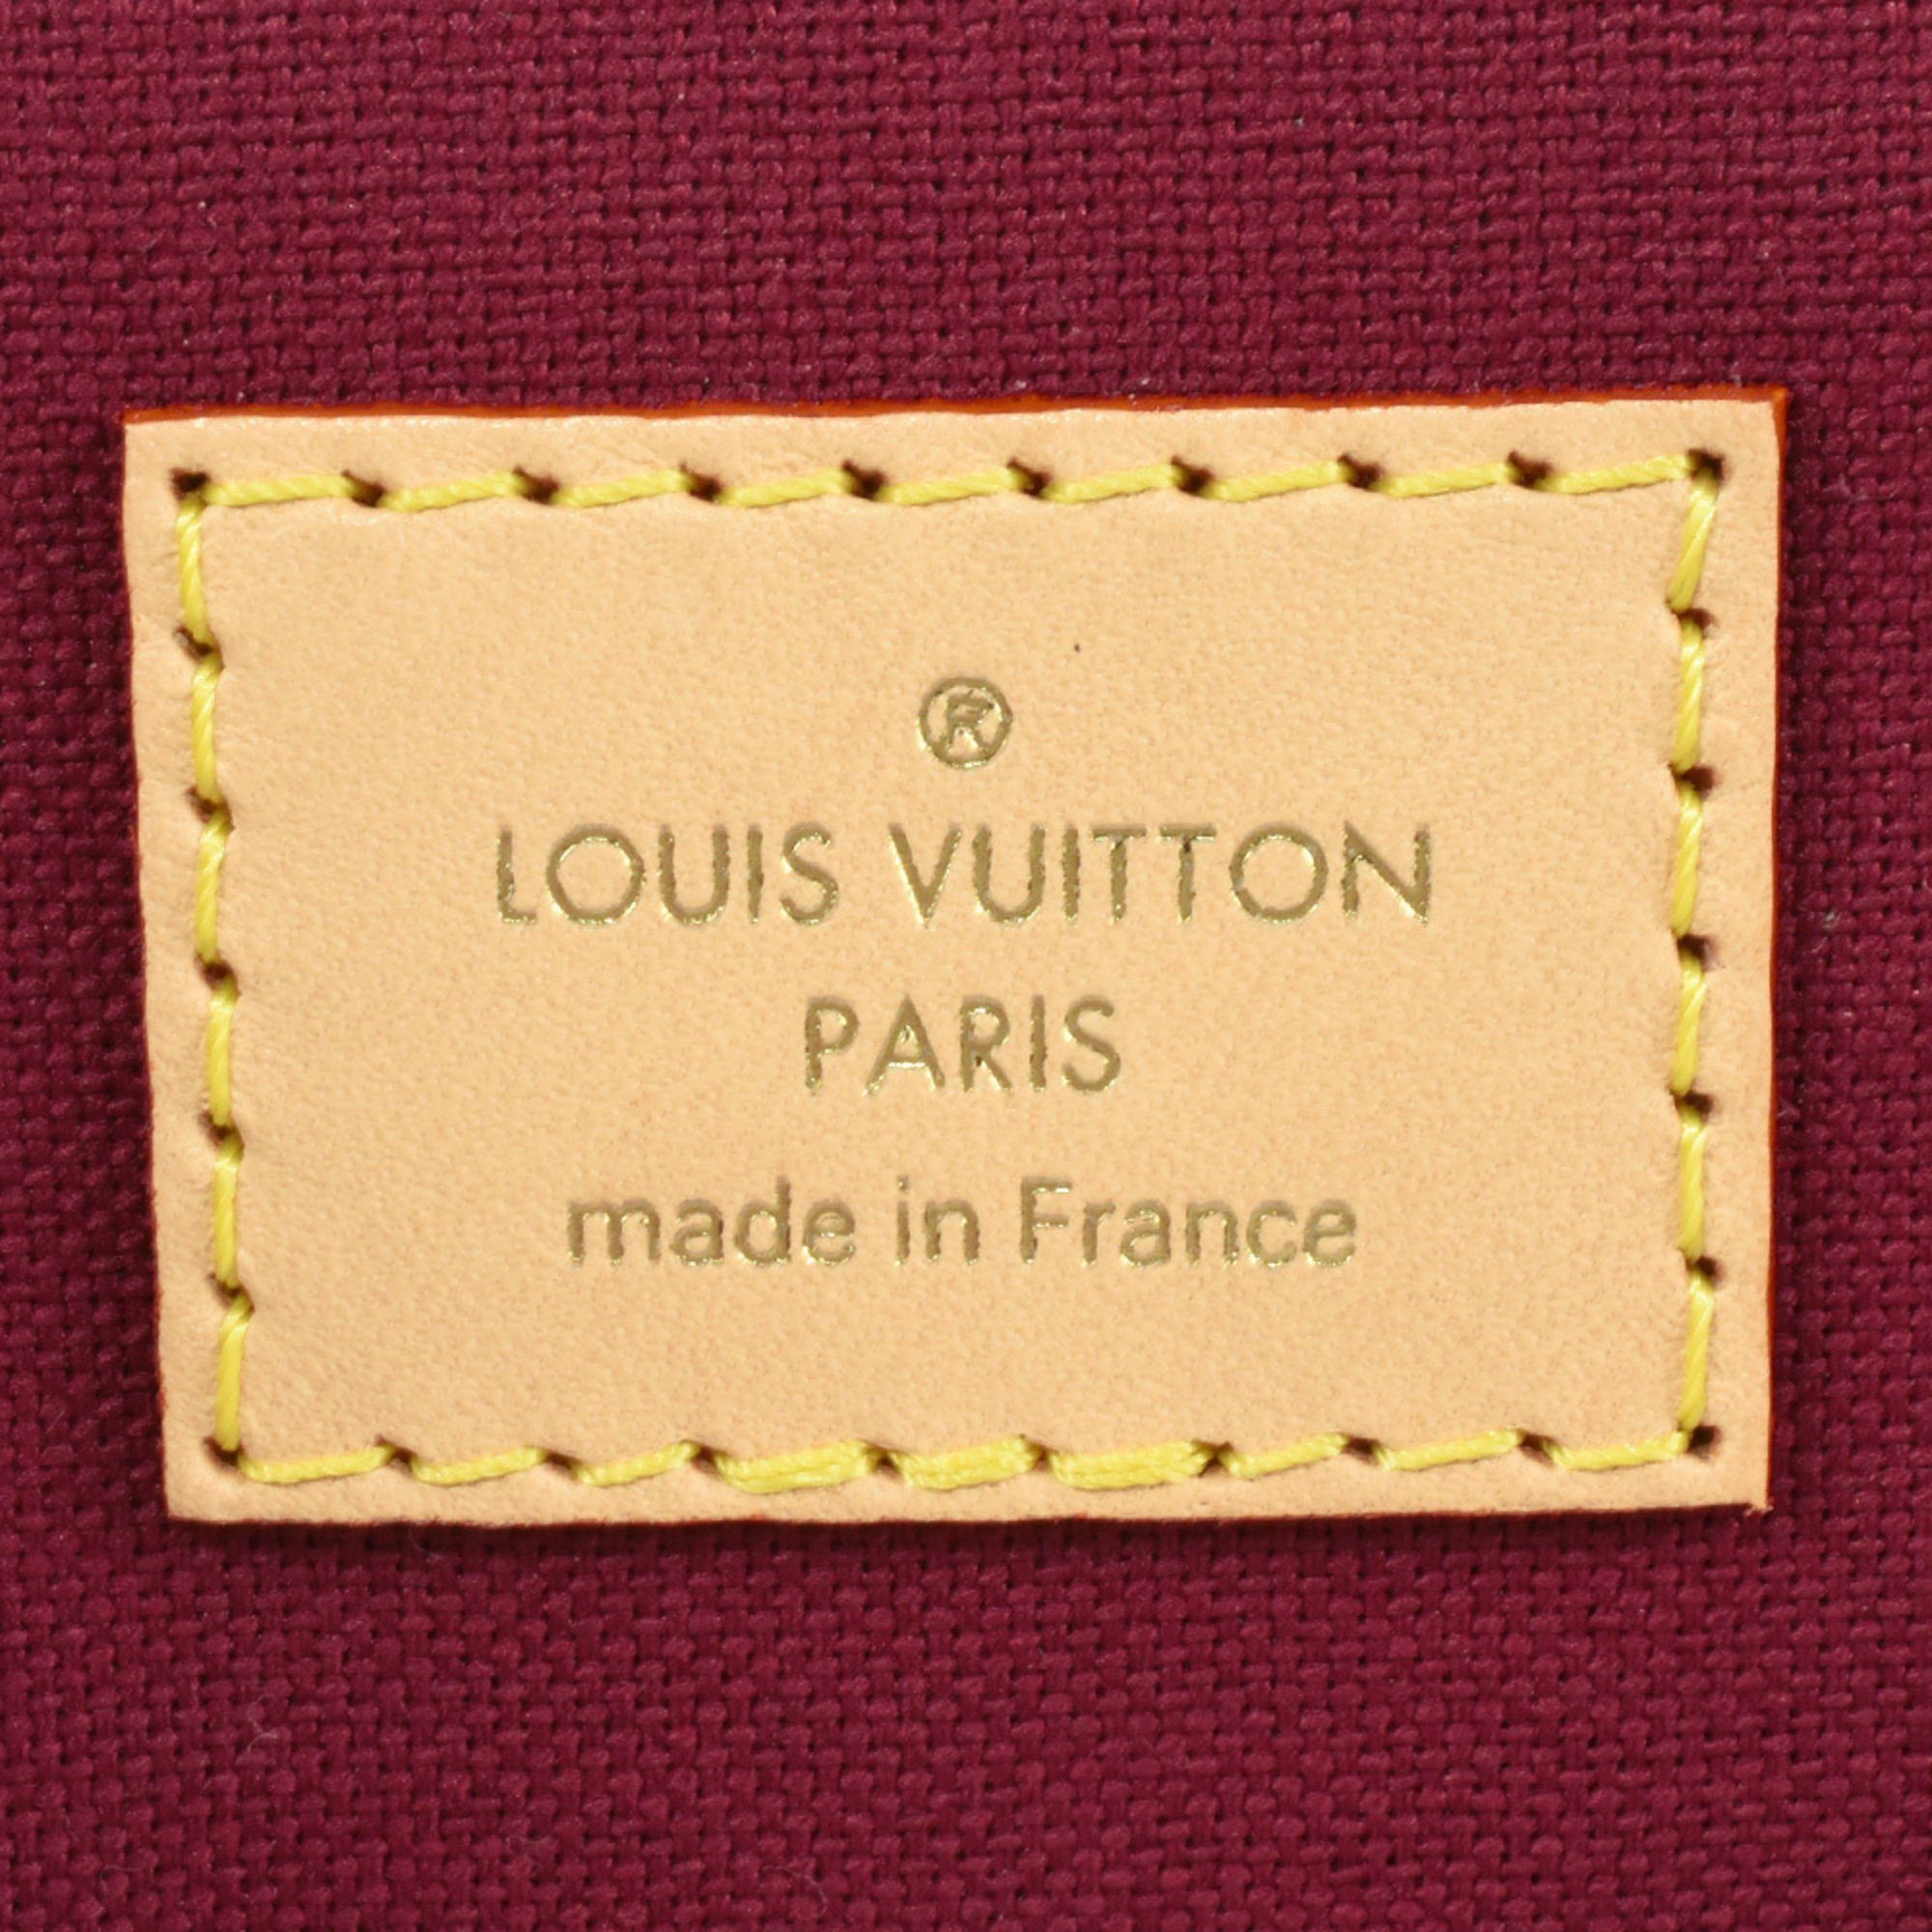 Louis Vuitton Petit Pale PM Handbag Monogram Canvas Tanned Leather M45900 RFID Women's